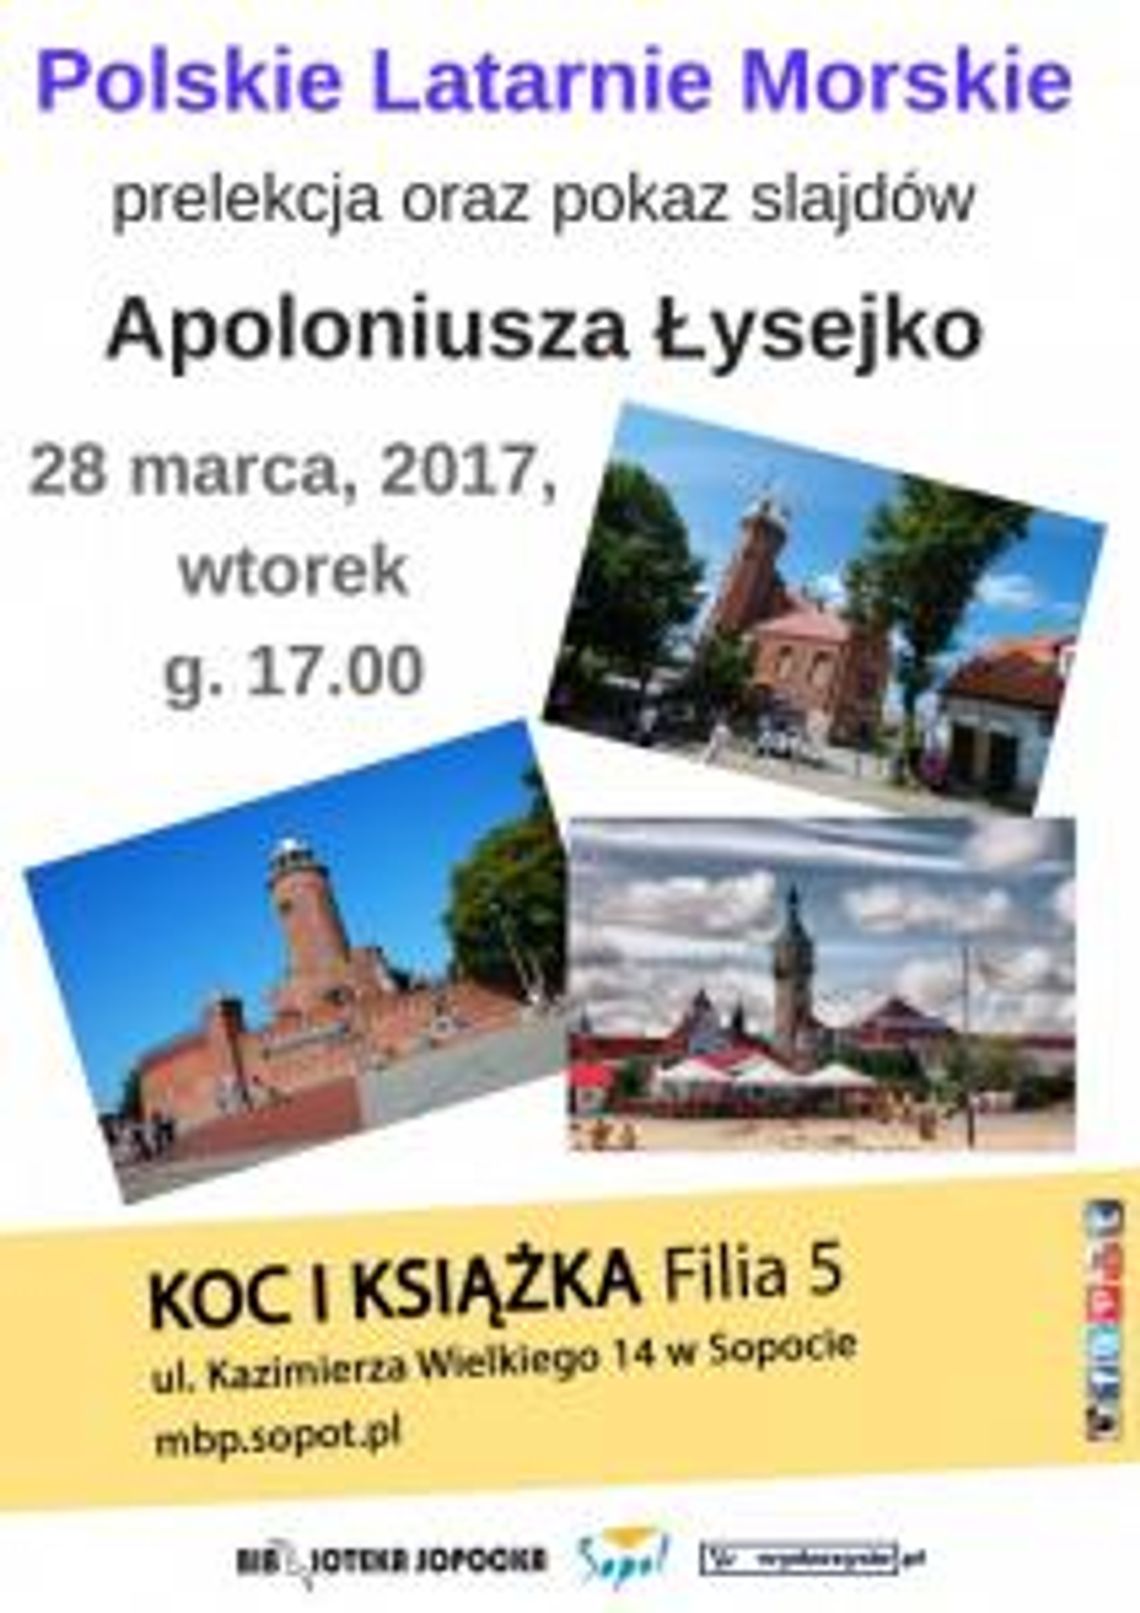 Polskie Latanie Morskie - spotkanie z Apoloniuszem Łysejko